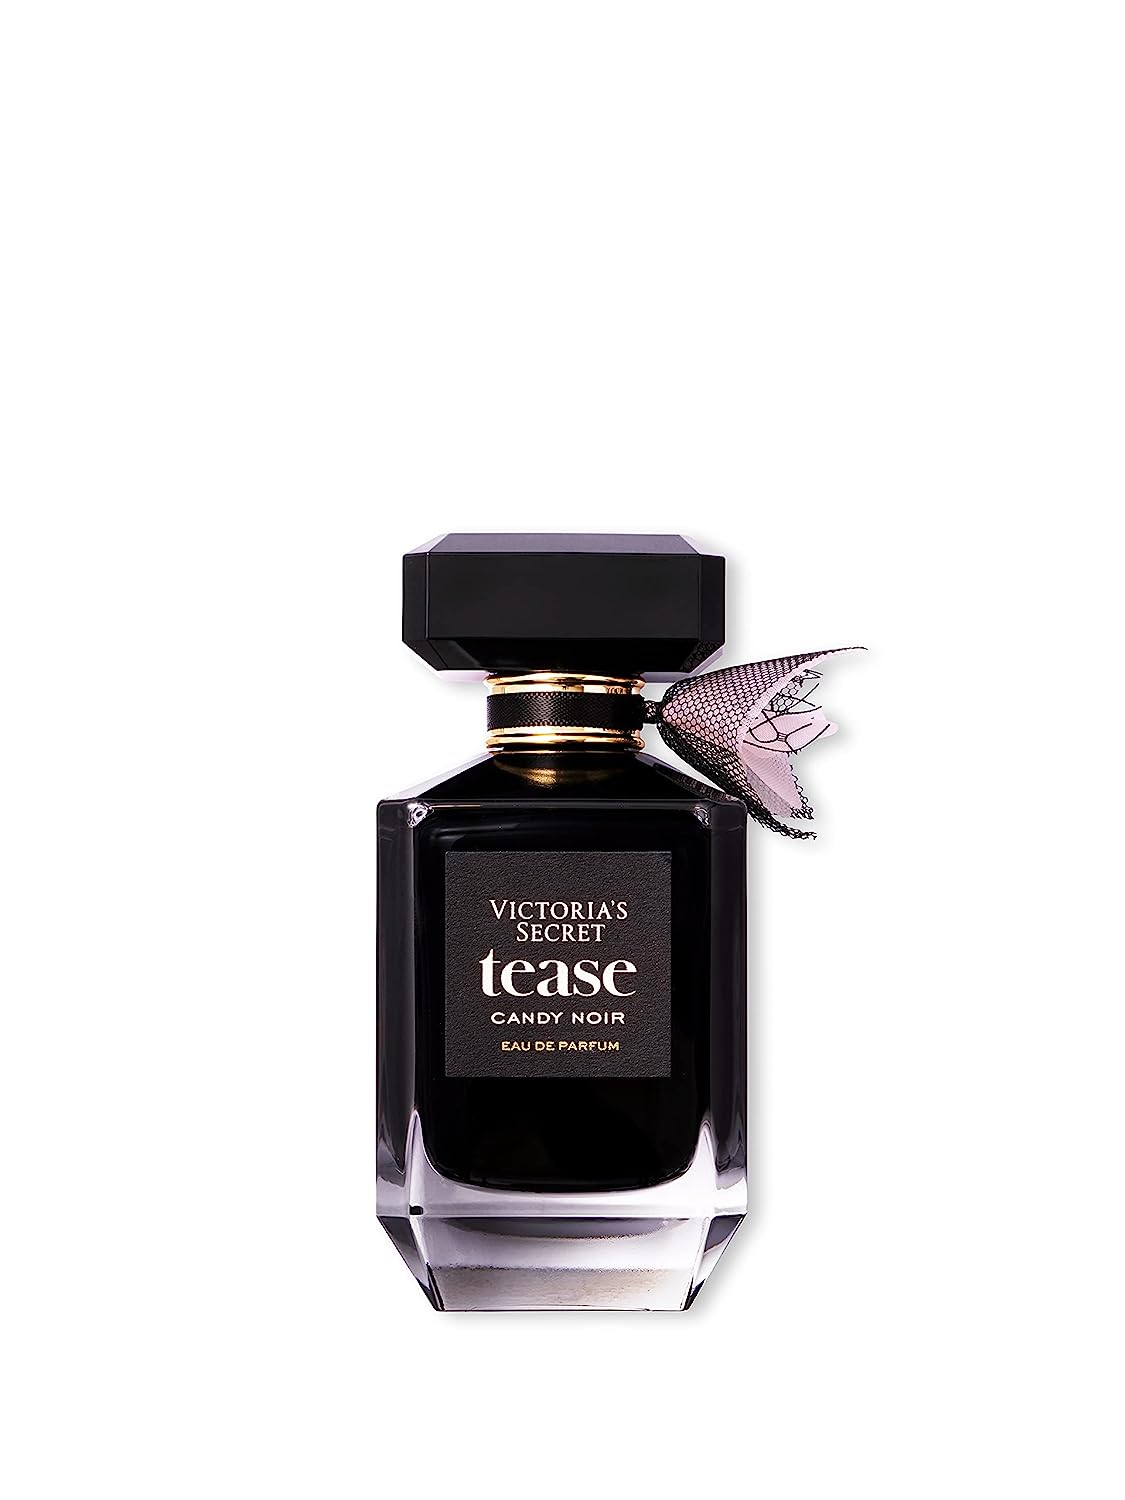 Victoria's Secret Tease CANDY Noir 3.4oz Eau de Parfum